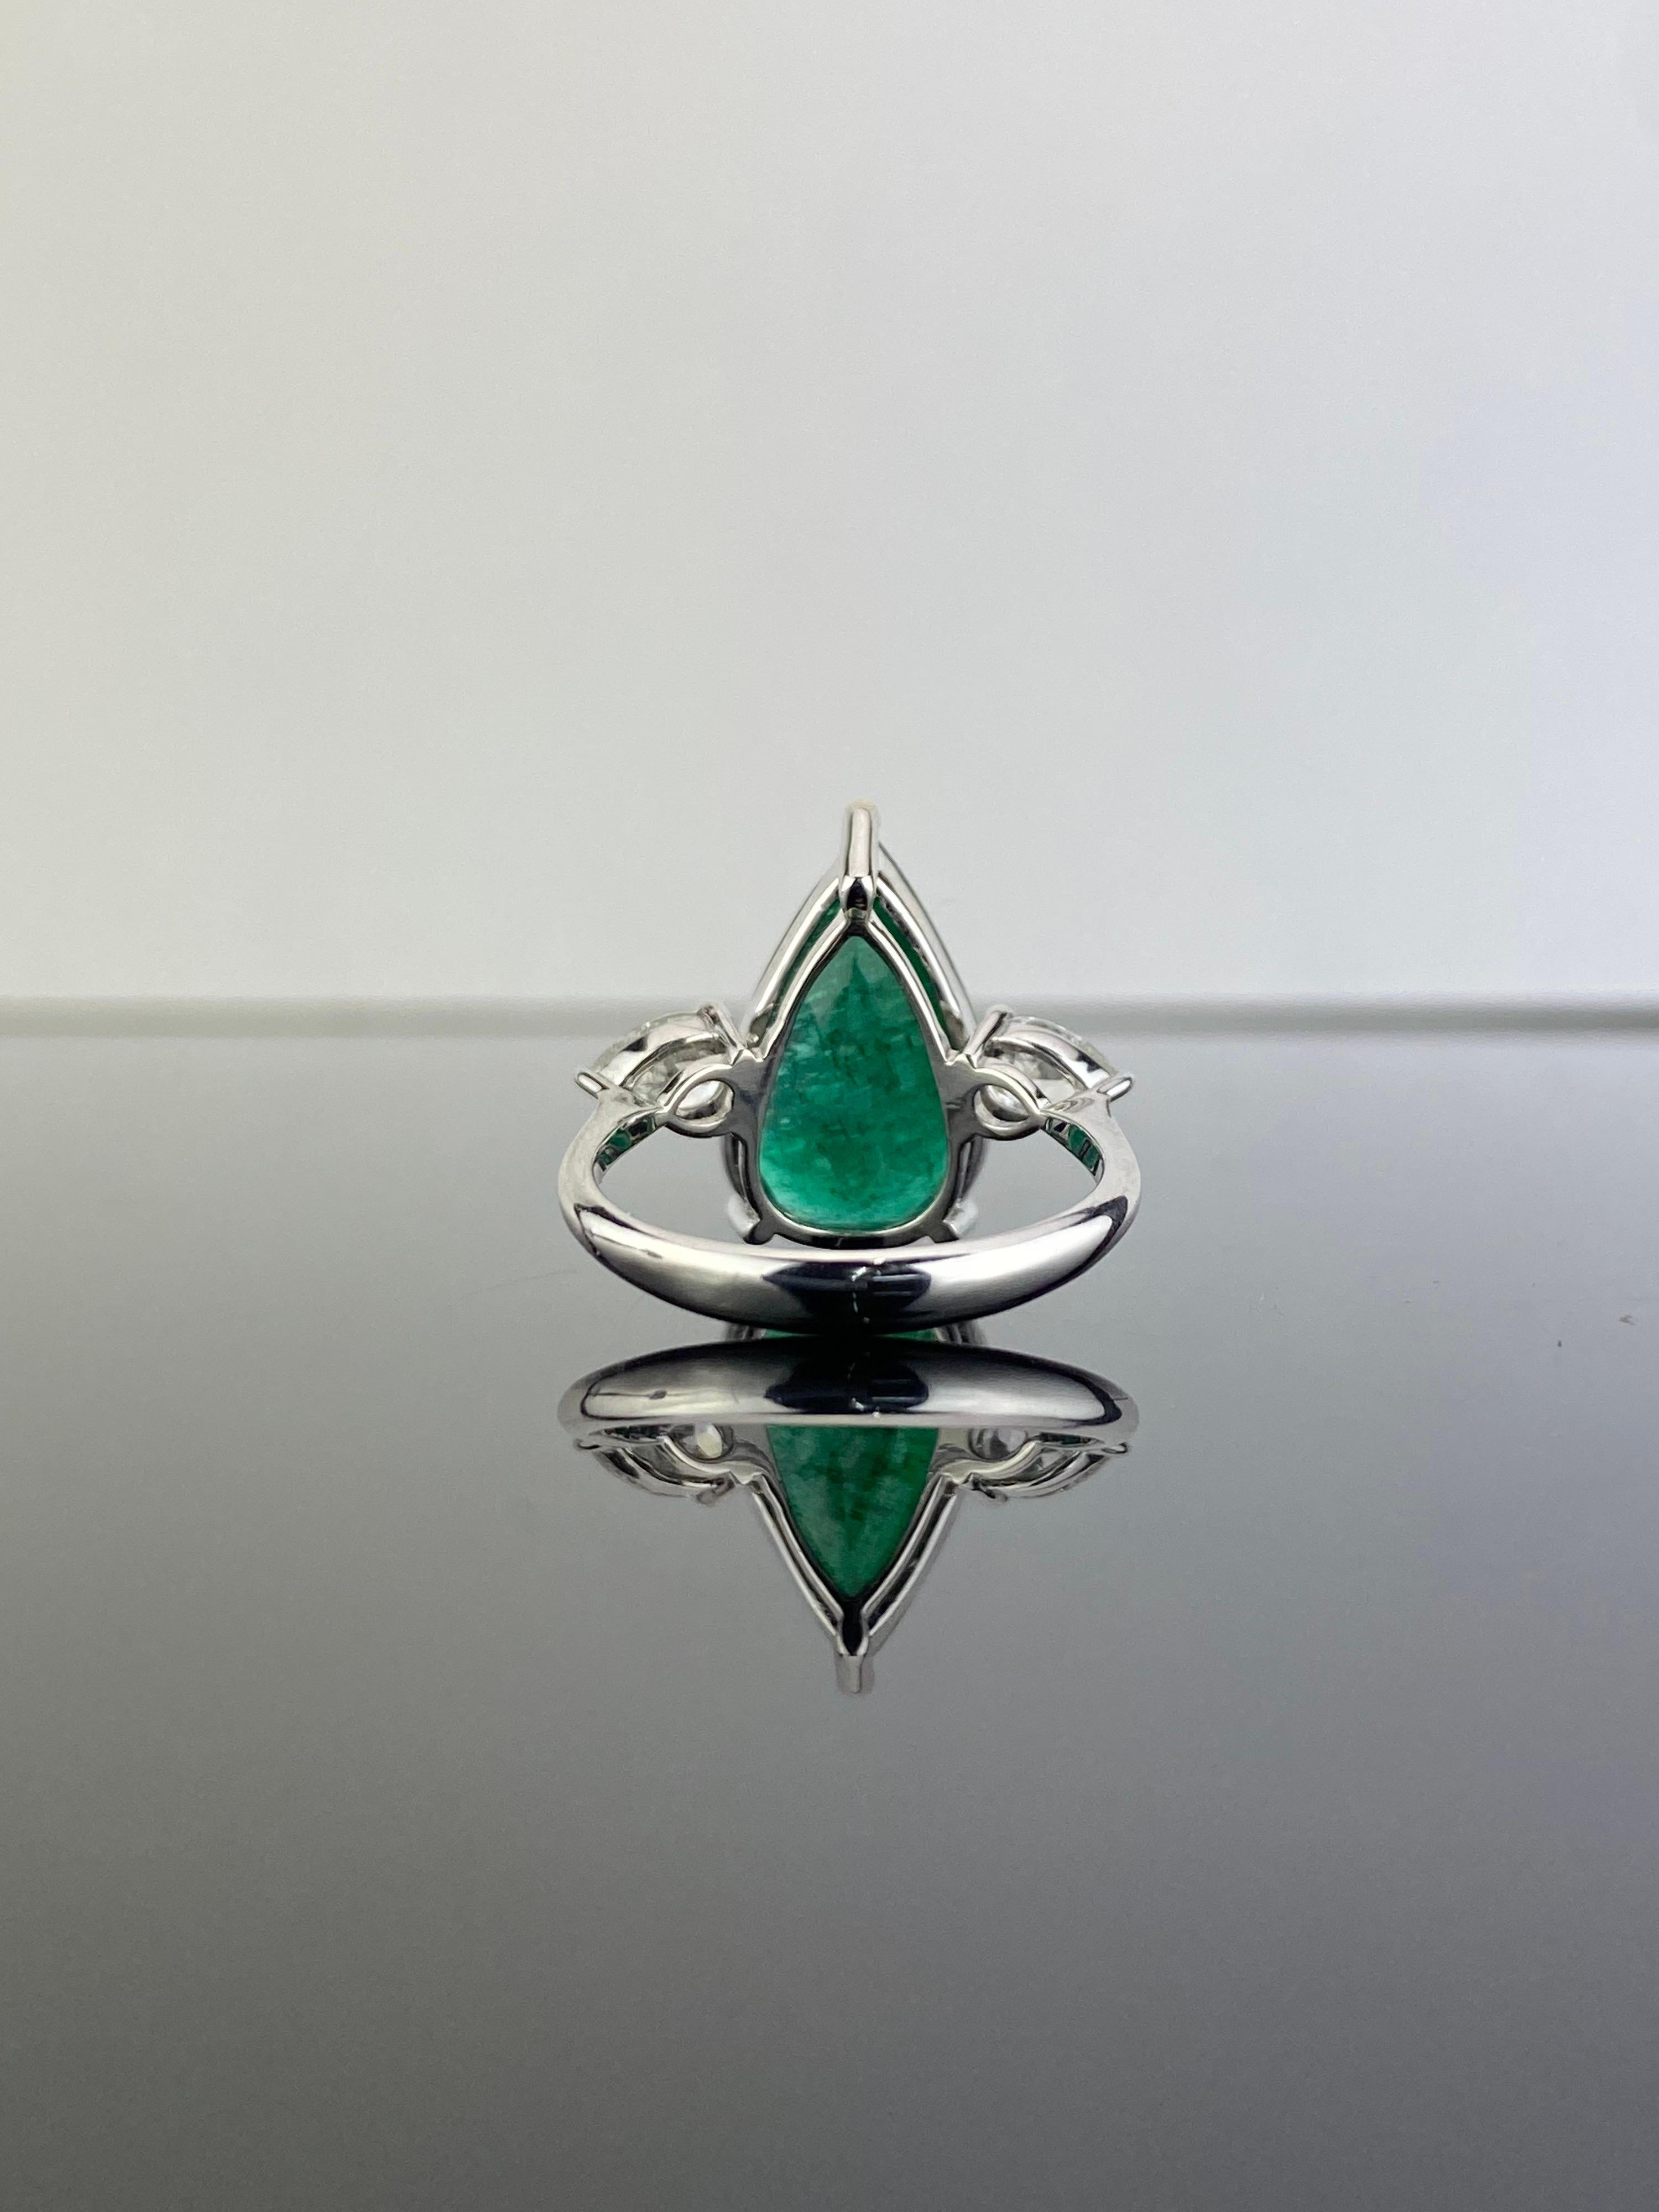 Magnifique bague de fiançailles certifiée à trois pierres, composée d'une émeraude de 5,70 carats et d'un diamant blanc en forme de poire de 0,69 carat. La pierre centrale est une émeraude de Zambie, transparente, d'une belle couleur vert vif et